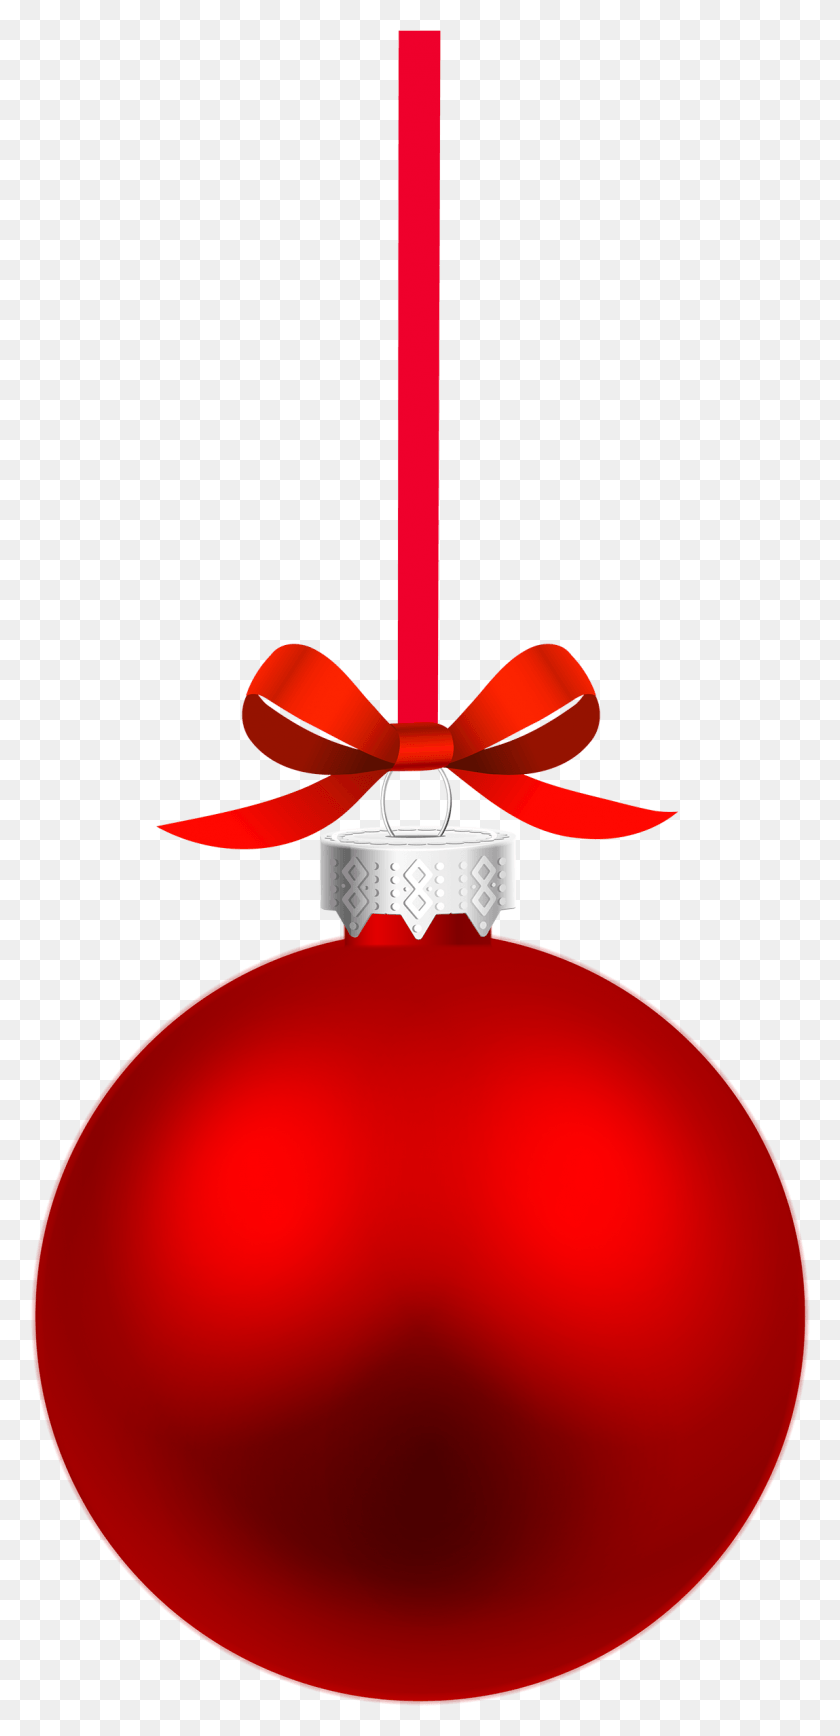 1149x2469 View Source Image Рождество И Новый Год Рождественский Красный Елочный Шар, Орнамент, Лампа Hd Png Download